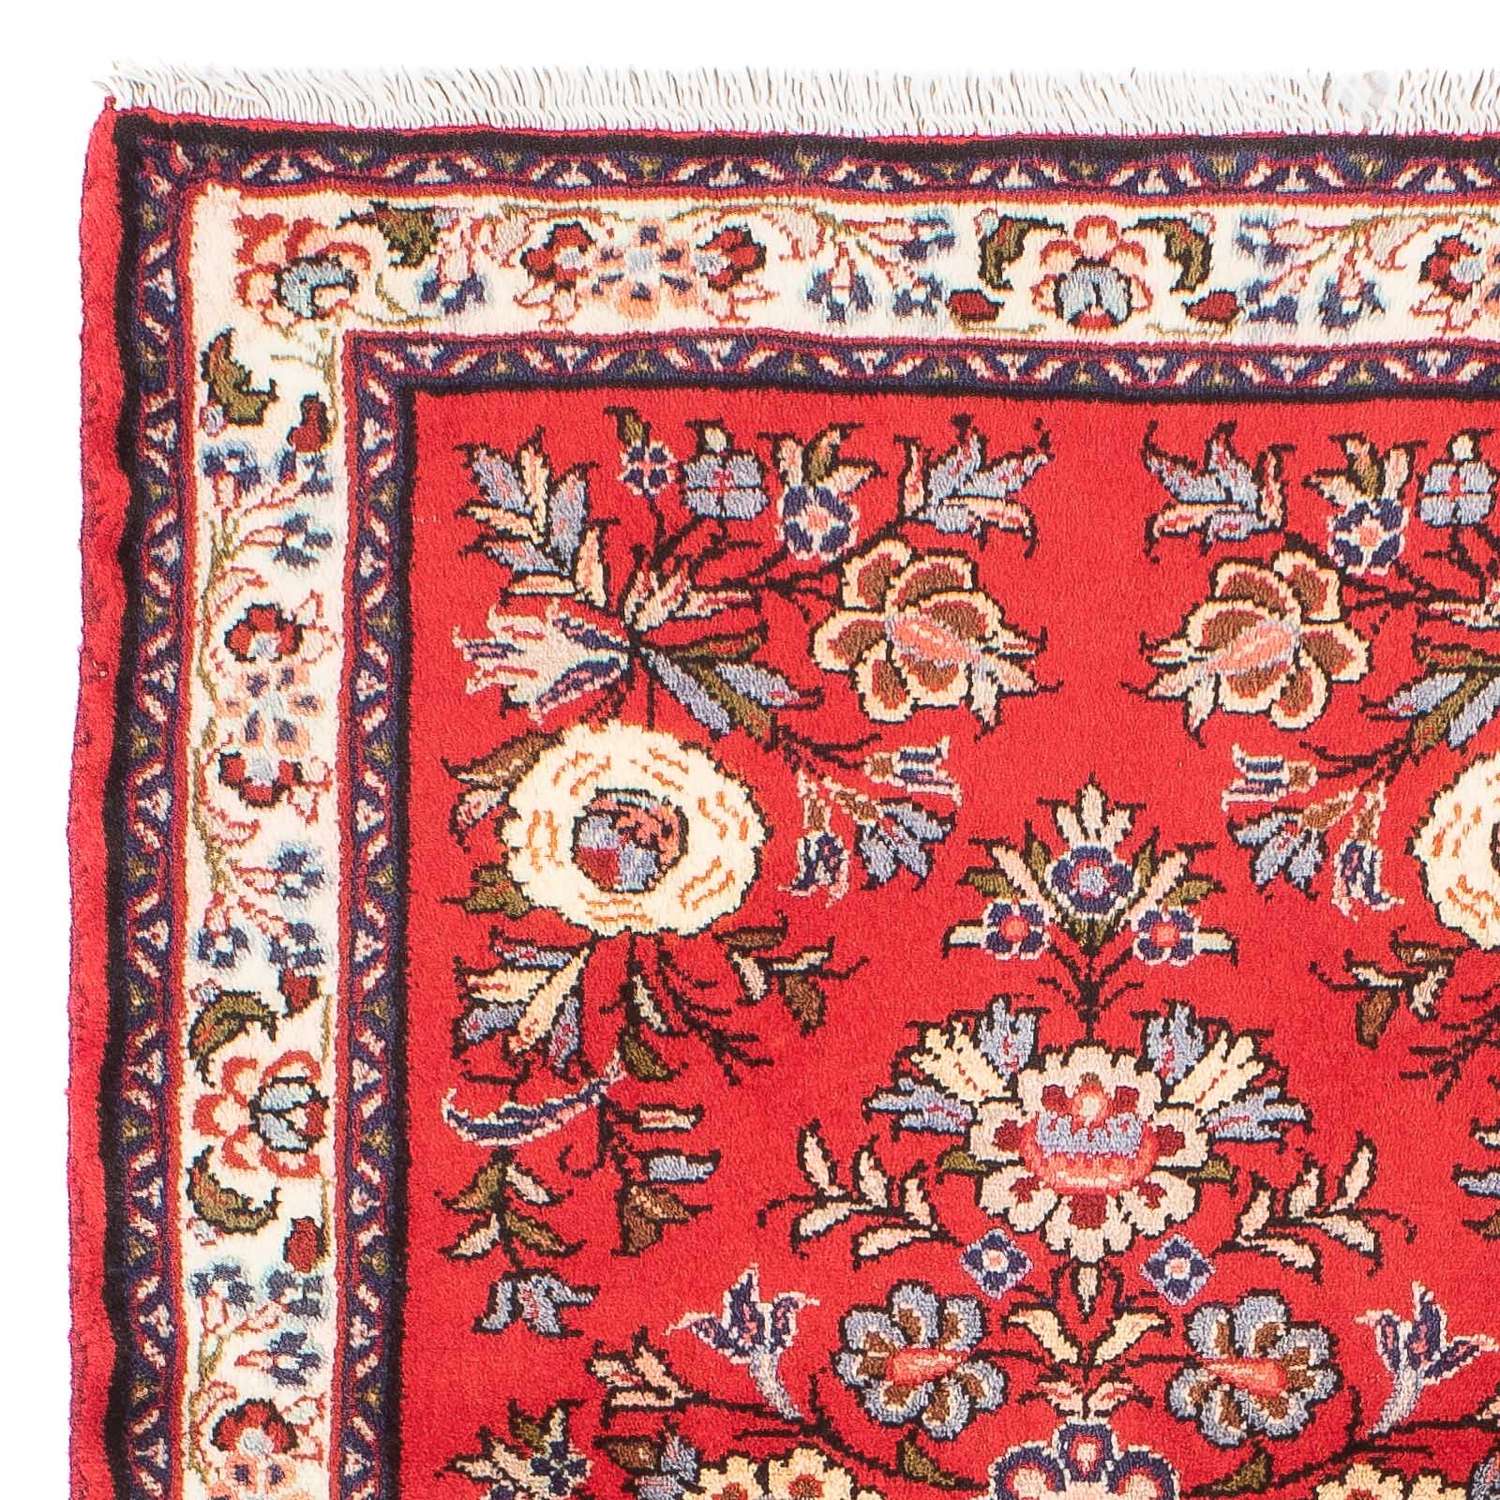 Persisk teppe - klassisk - 111 x 76 cm - rød